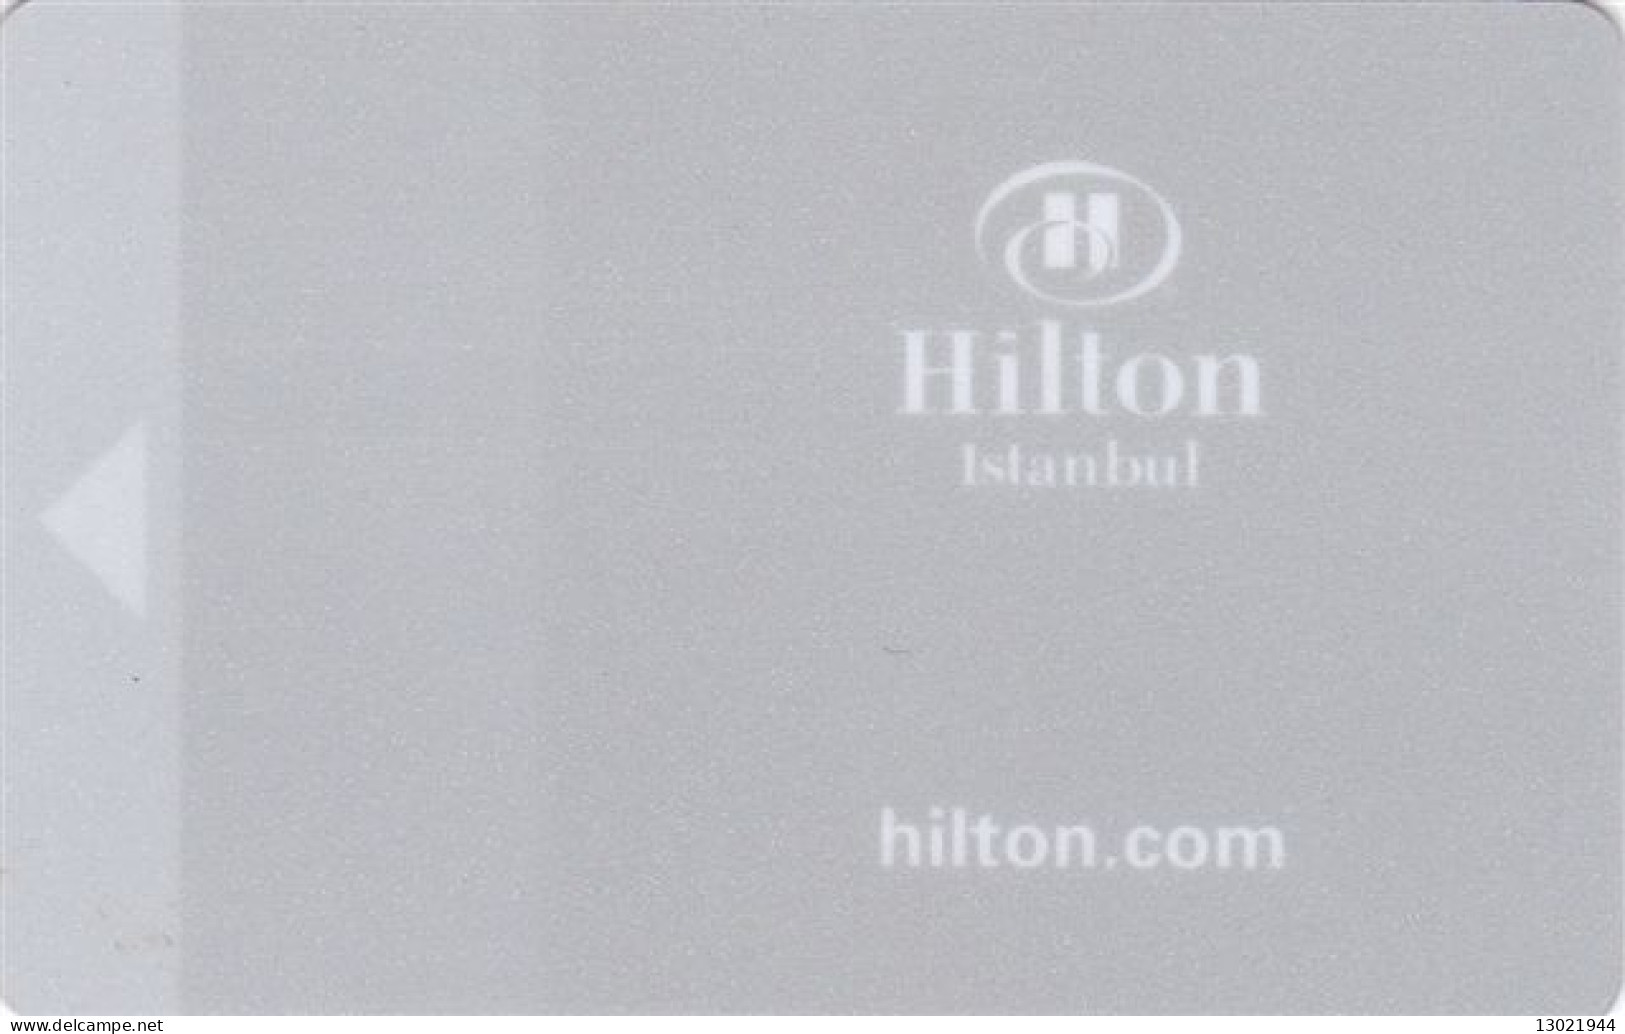 TURCHIA   KEY HOTEL  Hilton Istanbul 3 - Hotelsleutels (kaarten)